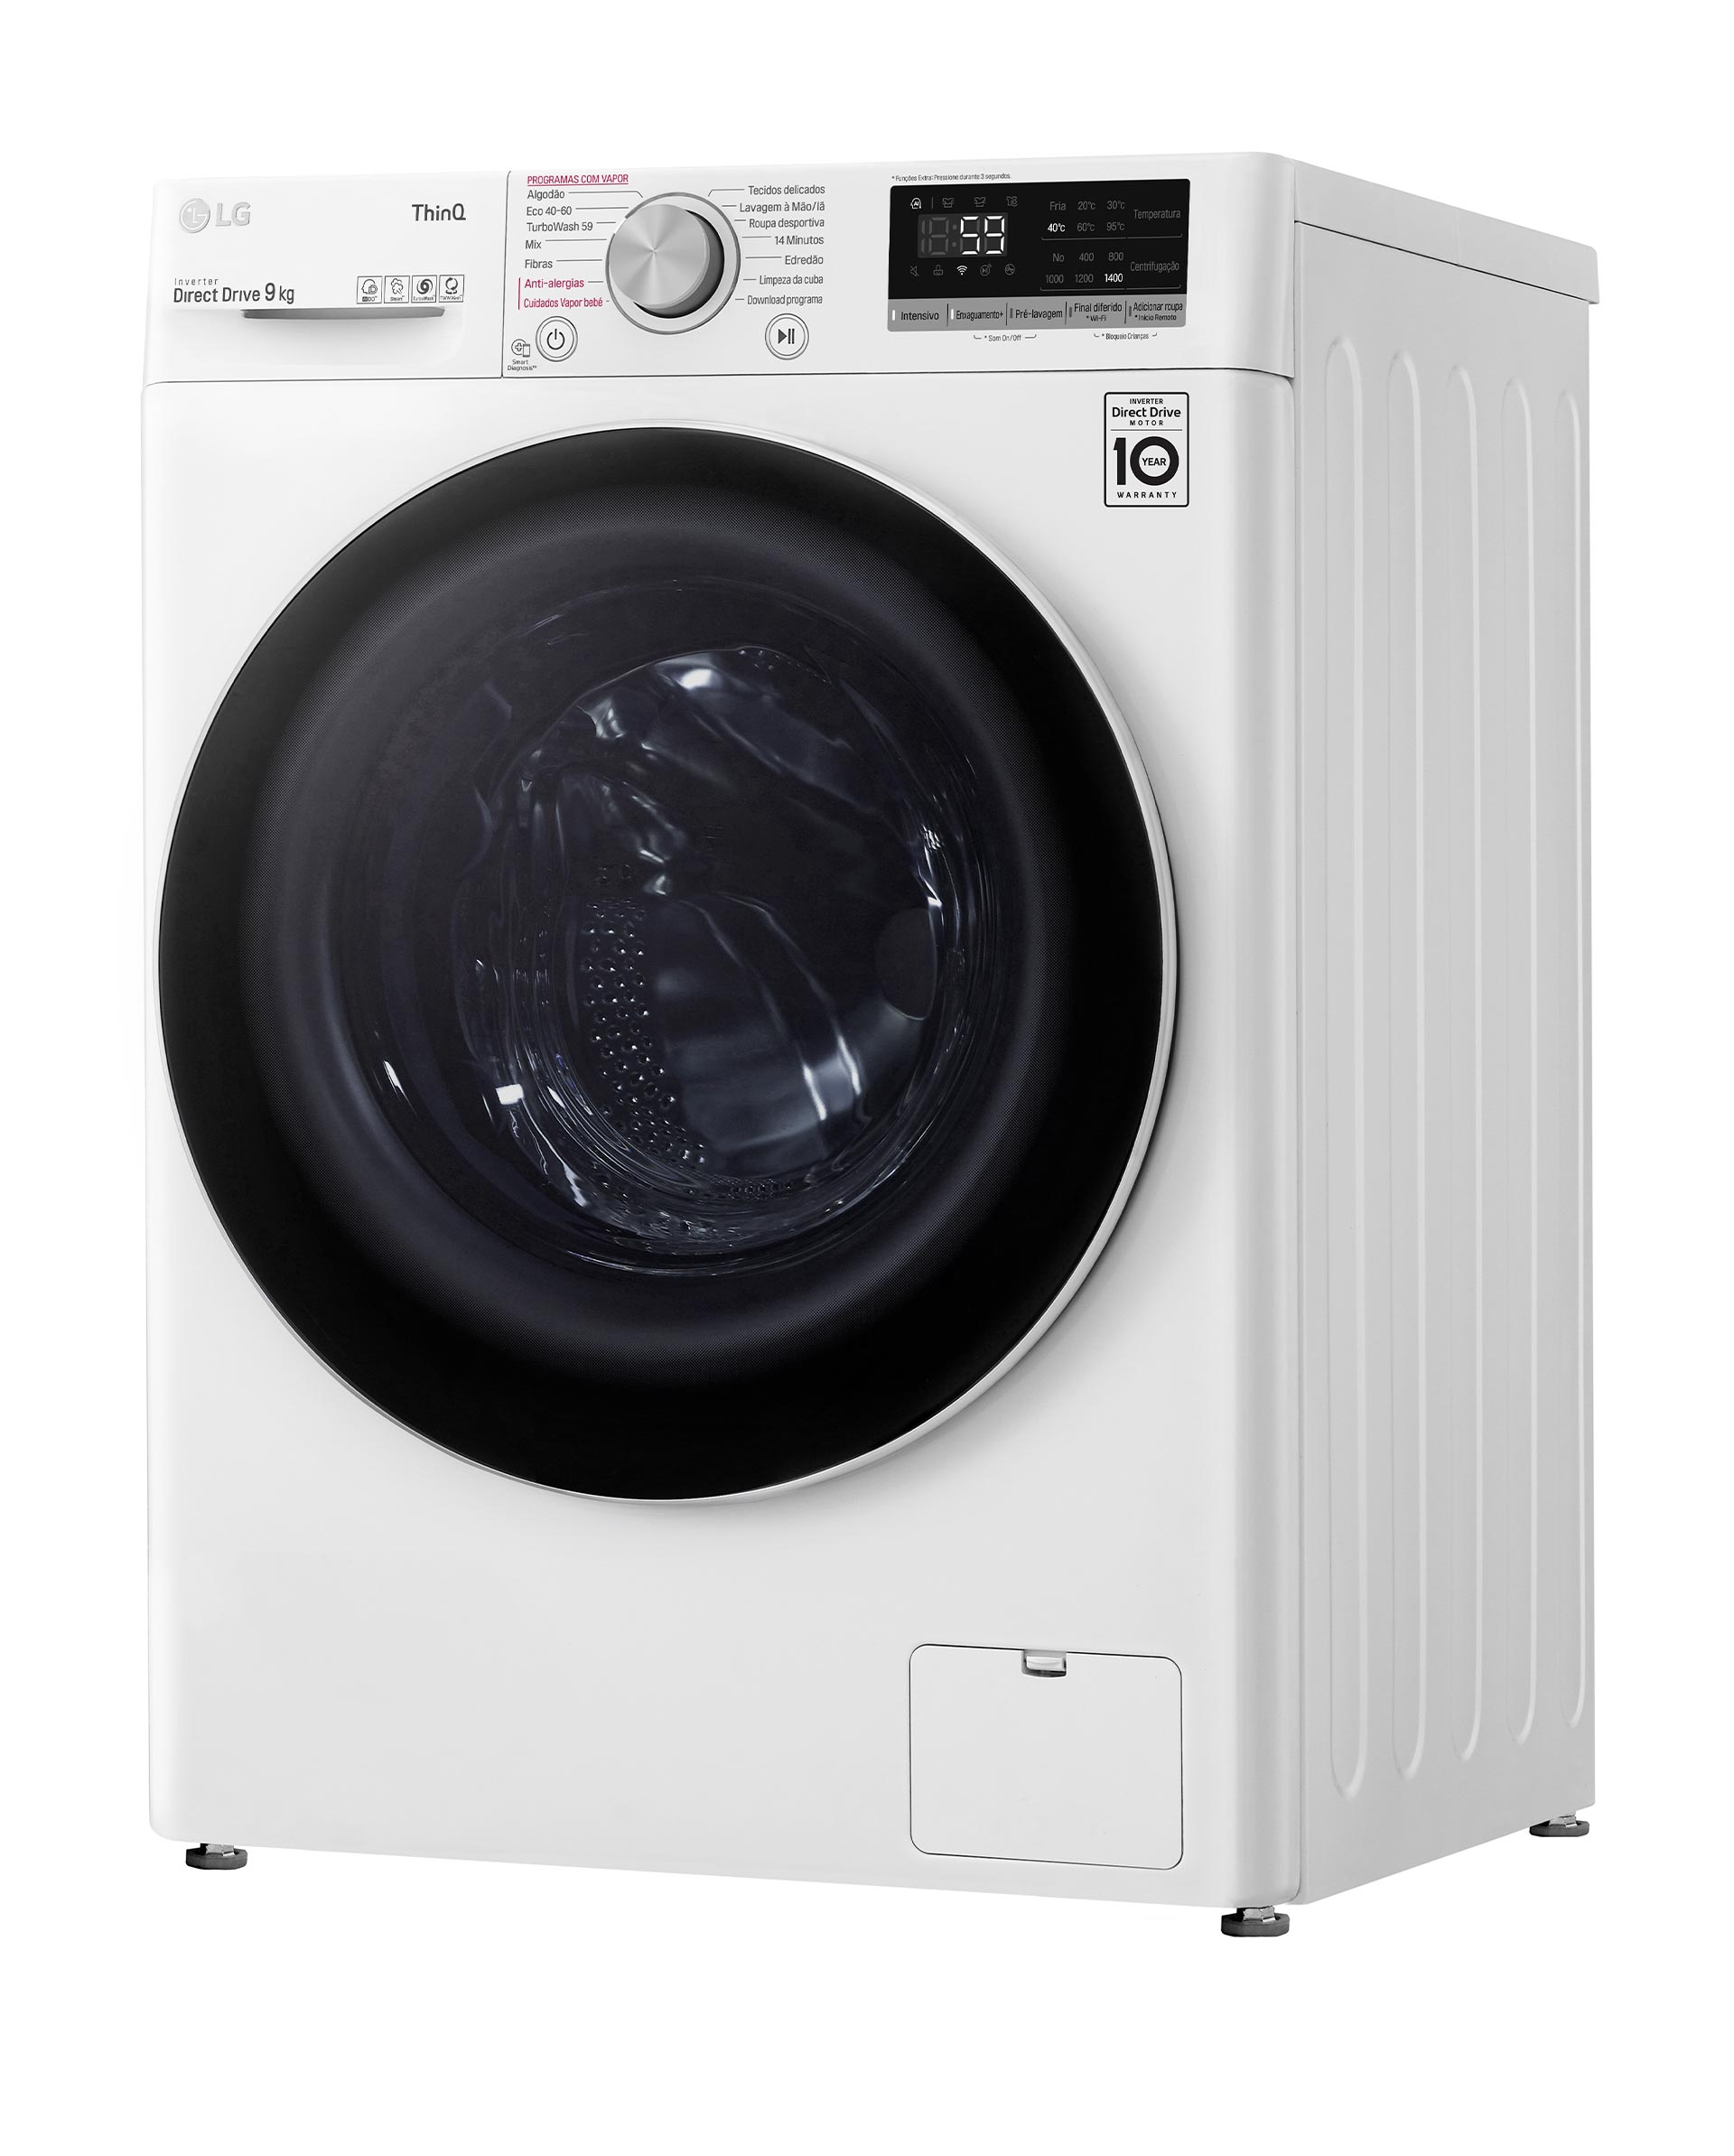 Máquina de lavar roupa Samsung - Eletrodomésticos com garantia de qualidade EDP